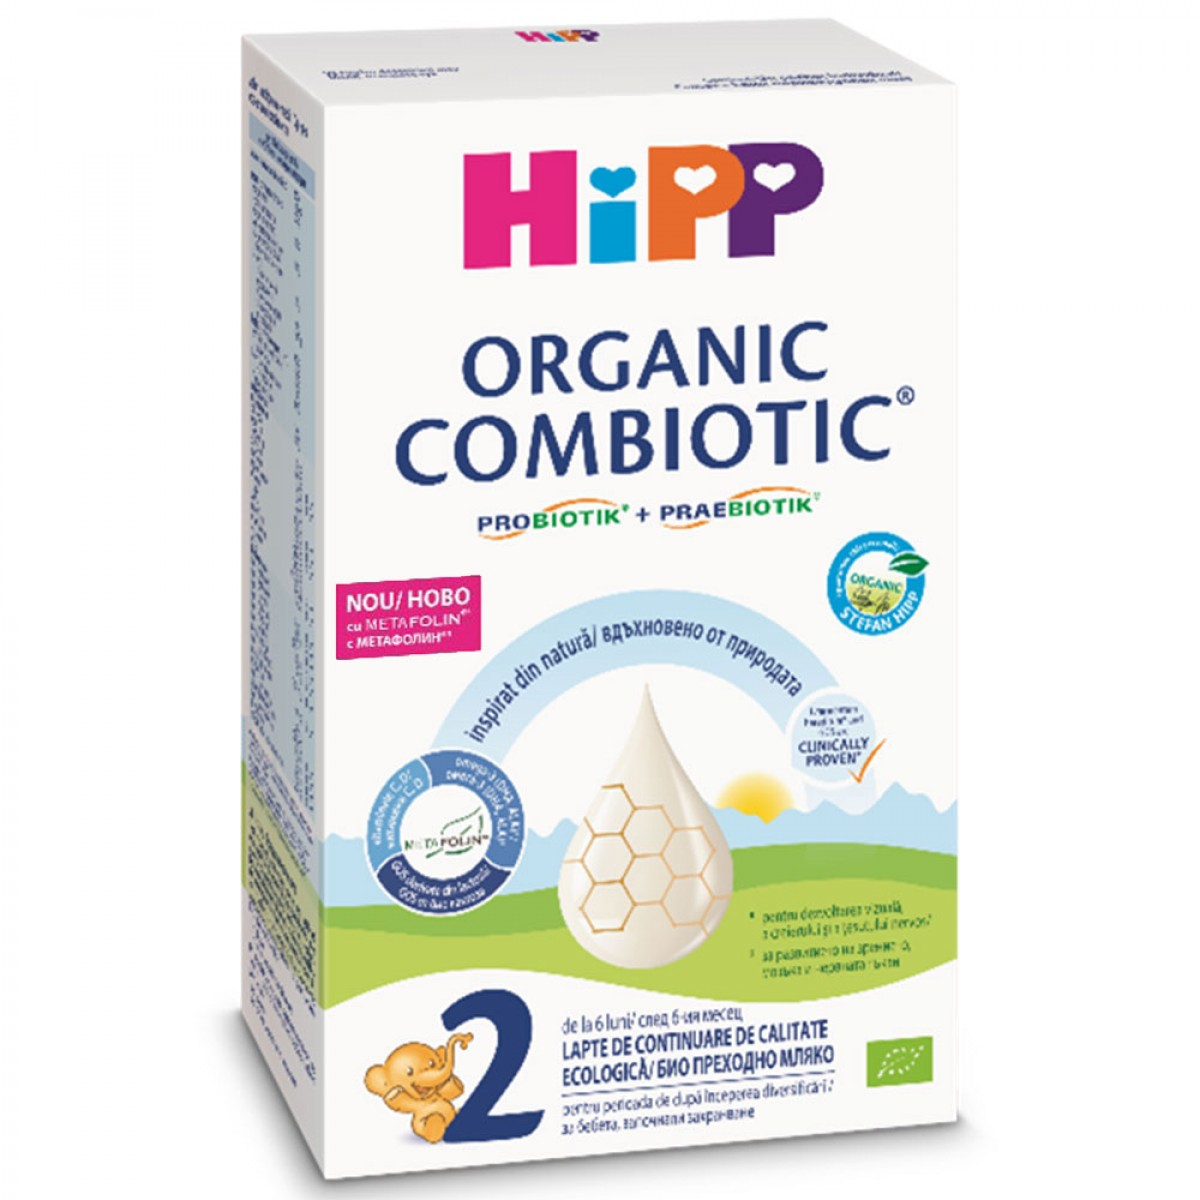 Lapte praf de continuare Organic Combiotic Hipp 2, 300 g, 6 luni+